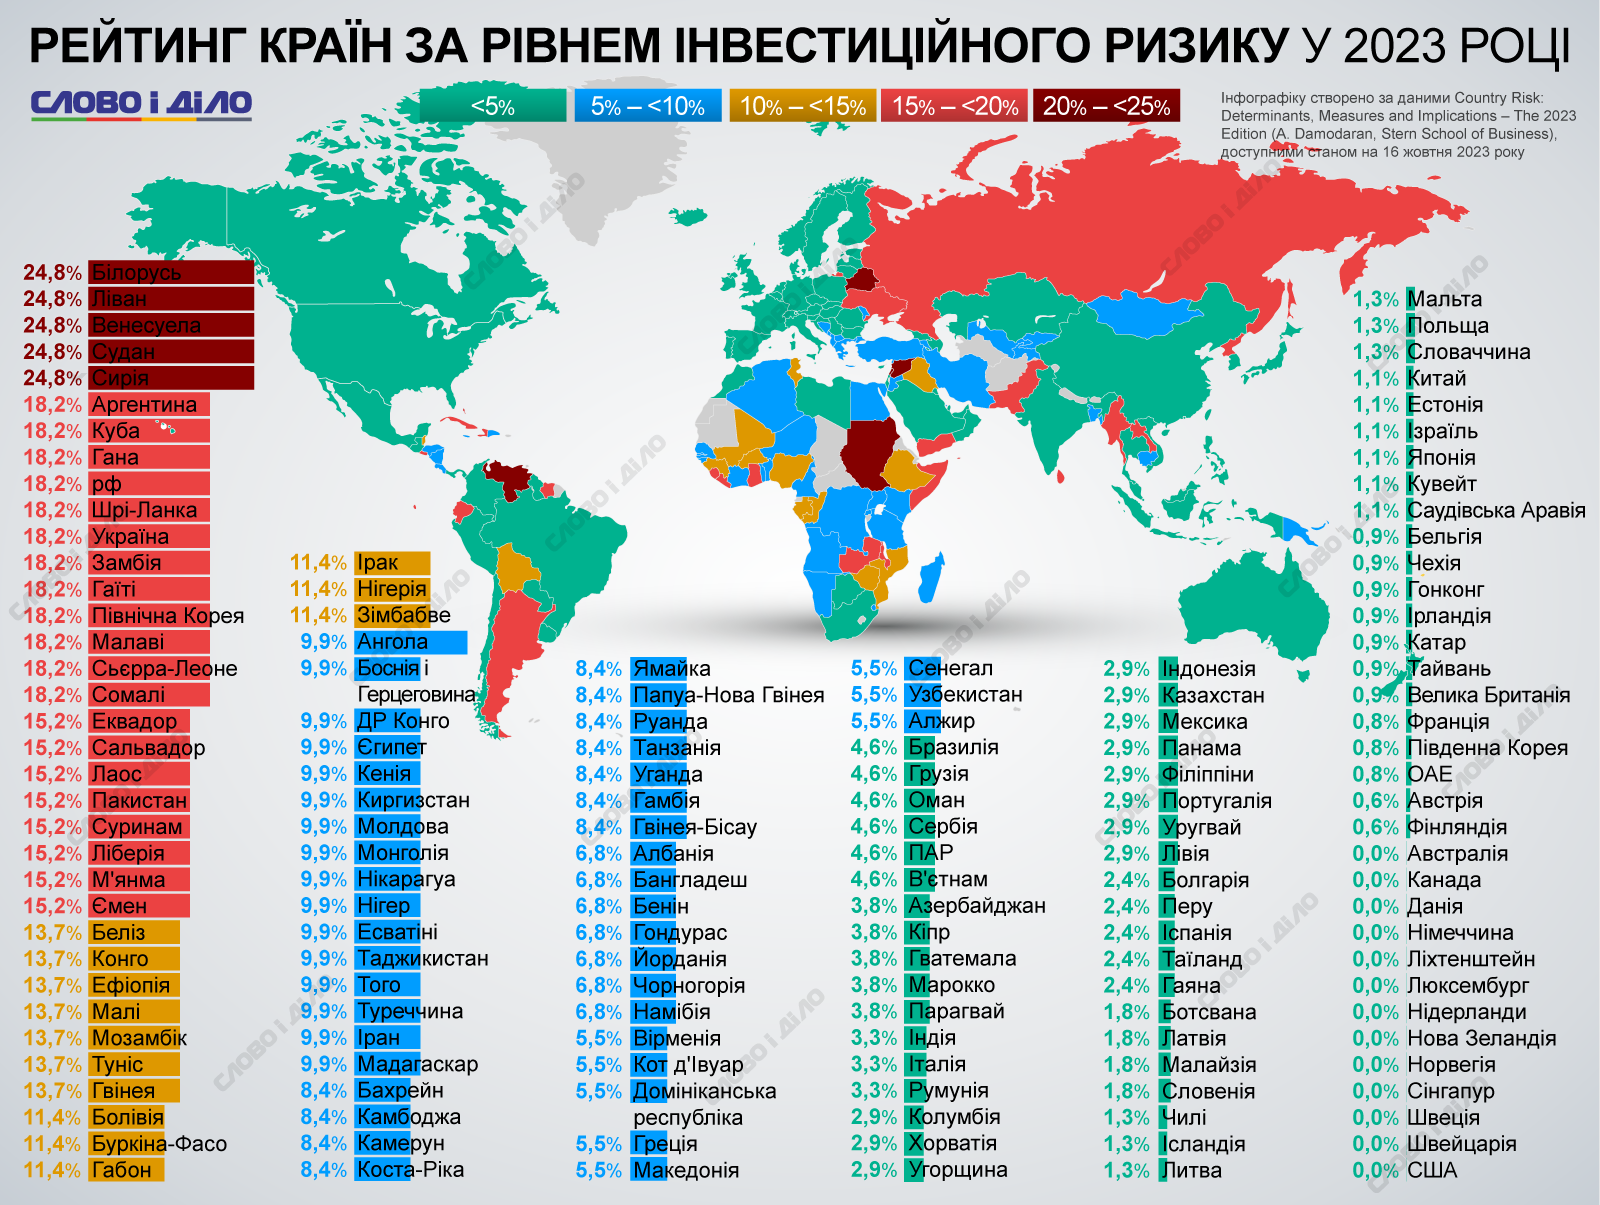 Украина в антирейтинге ТОП-20 стран с высоким уровнем инвестиционного риска